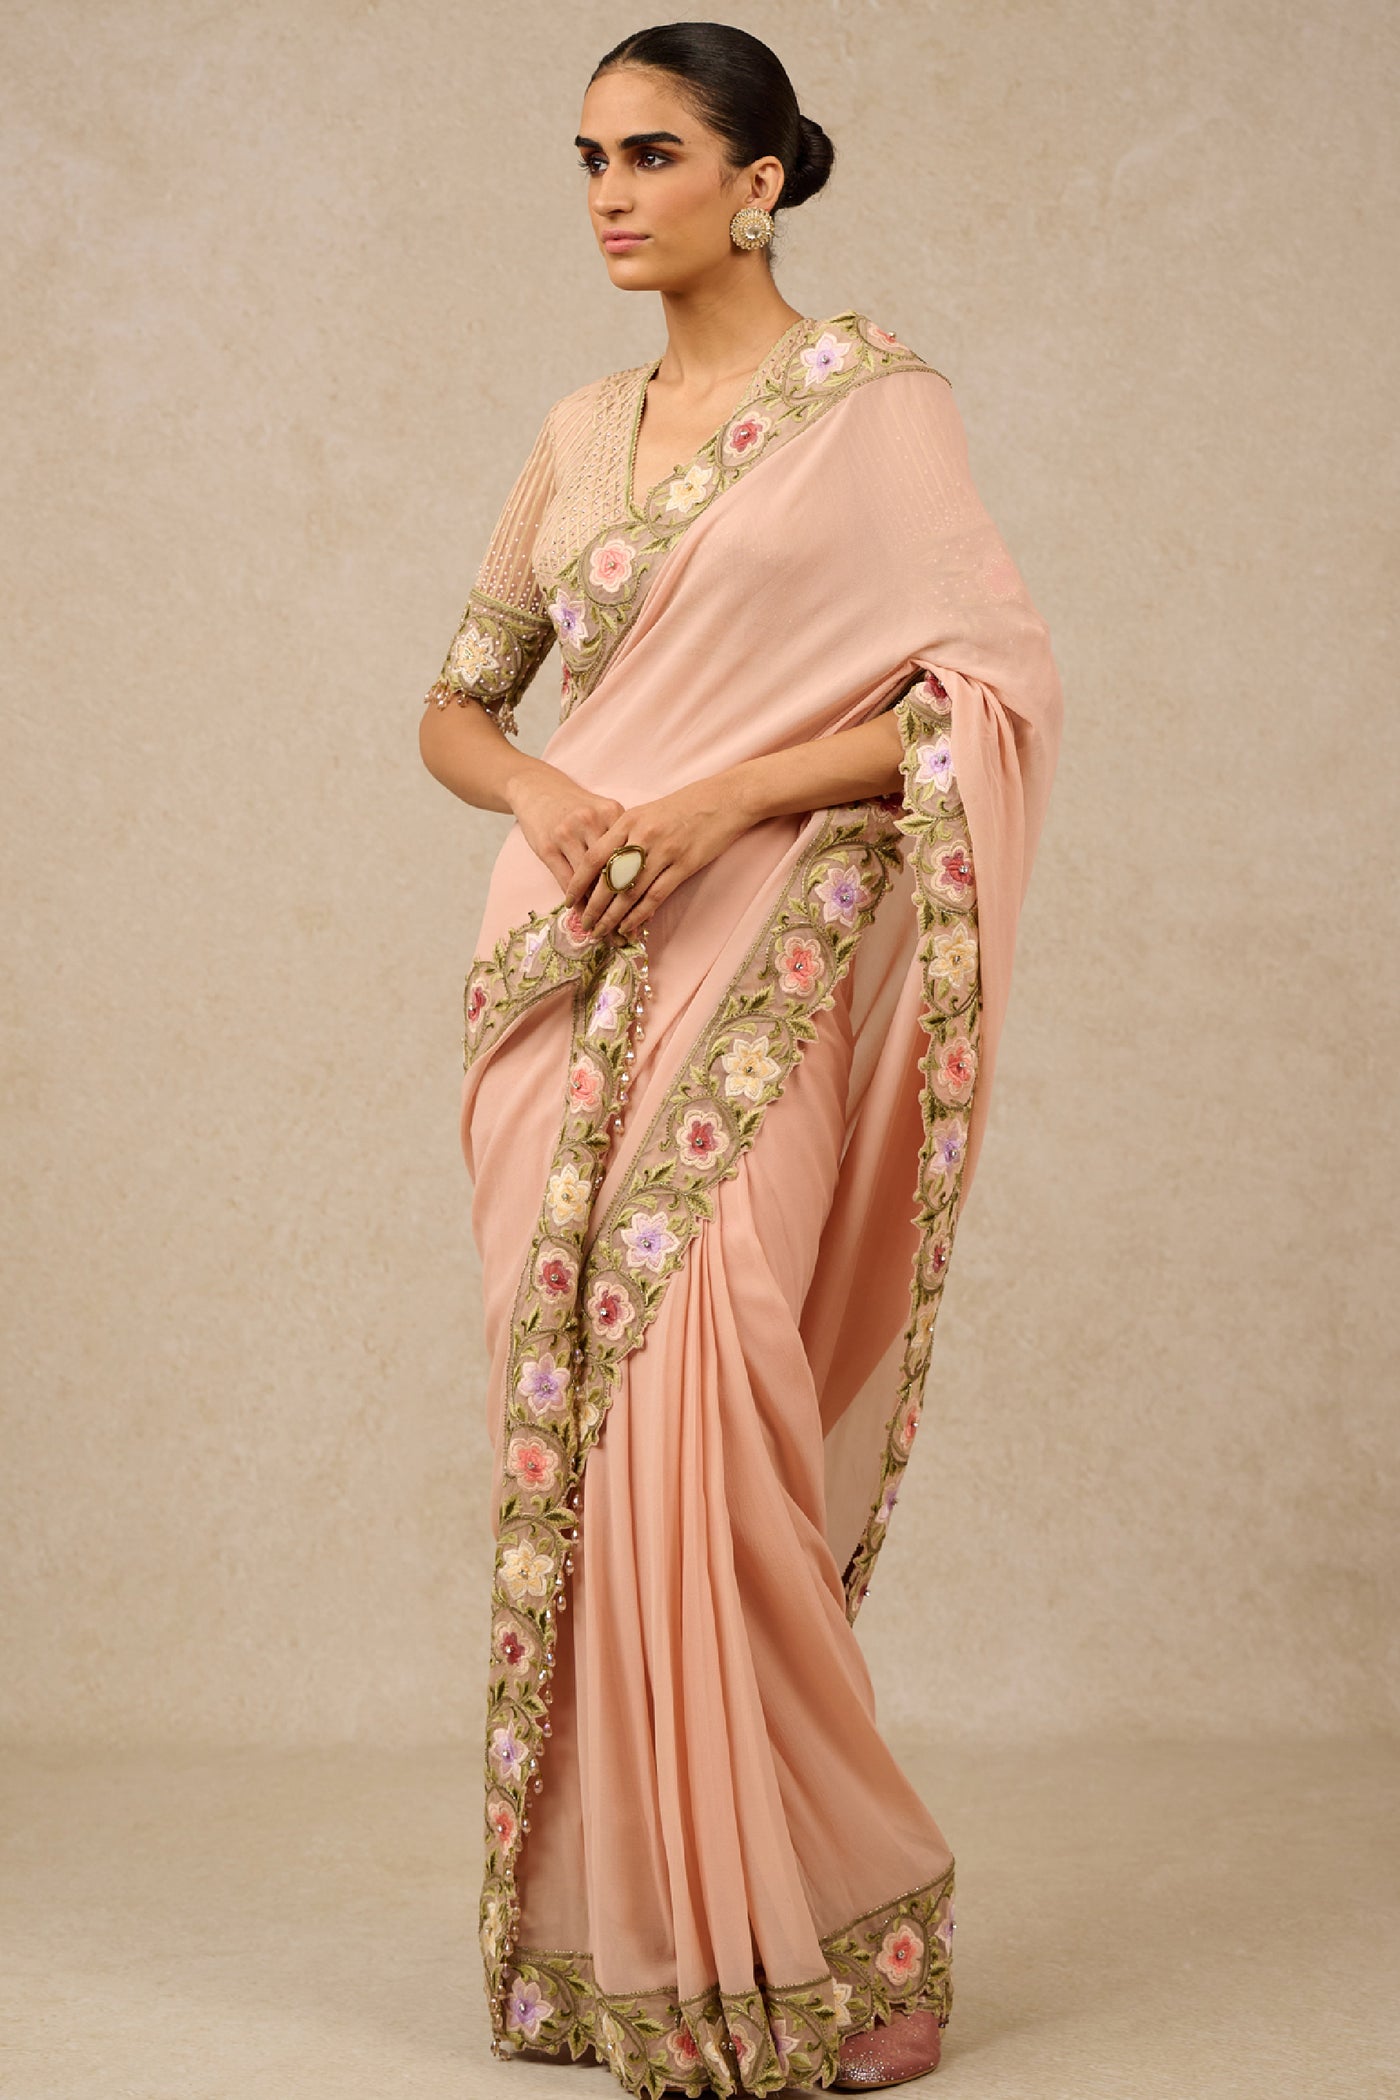 Tarun Tahiliani Saree Blouse Old Rose Indian designer wear online shopping melange singapore